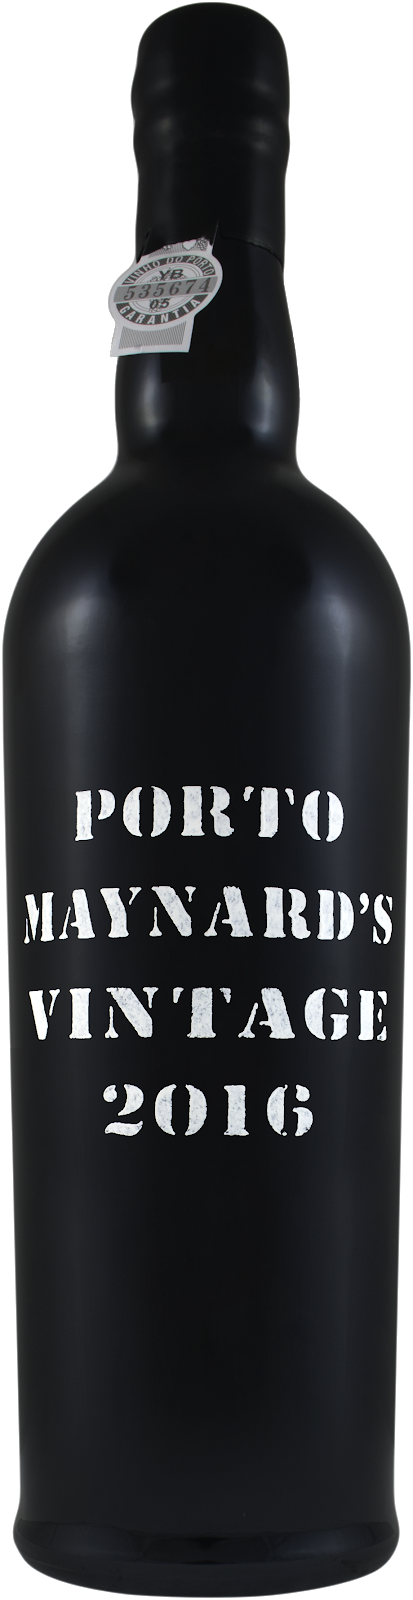 Maynards Vintage Porto 2016